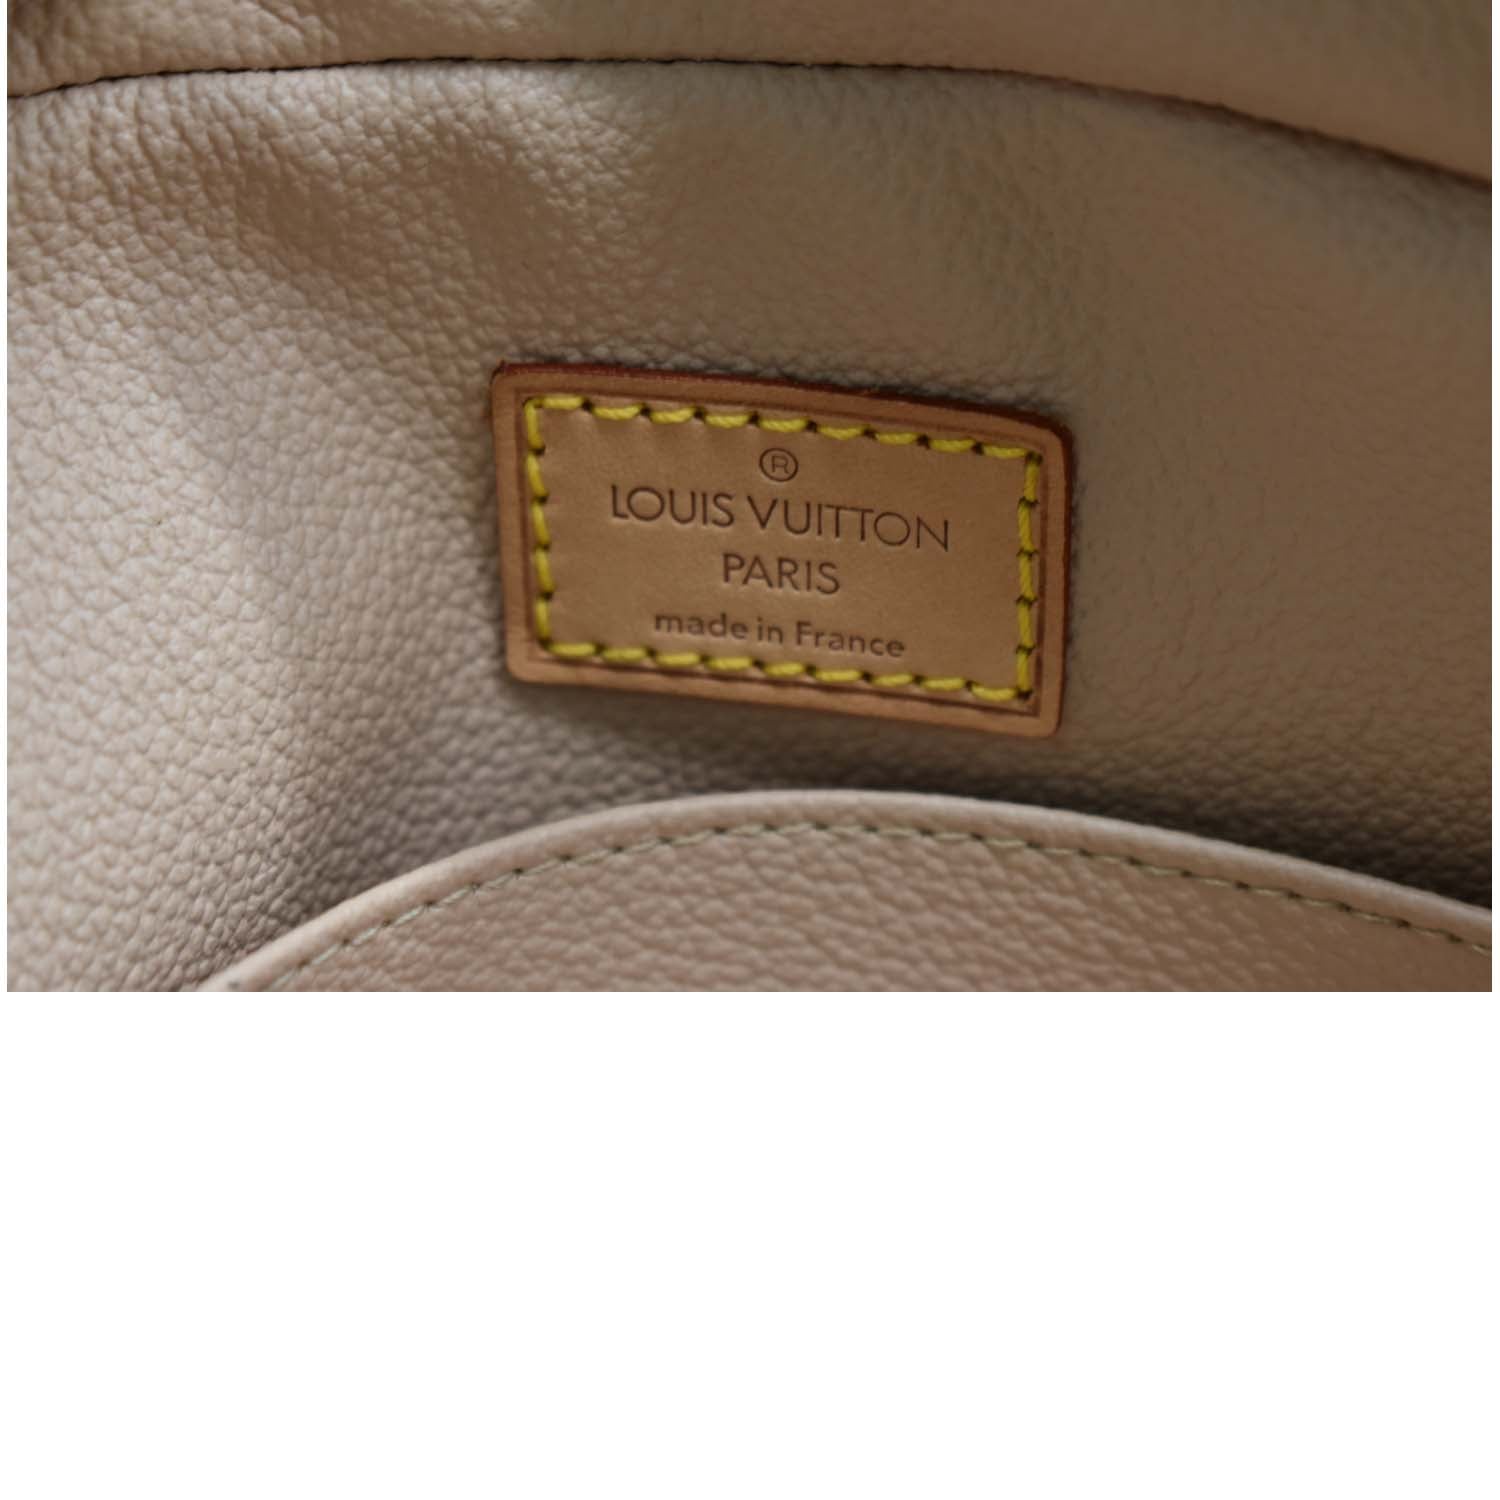 Trousse de toilette leather vanity case Louis Vuitton Brown in Leather -  31263114